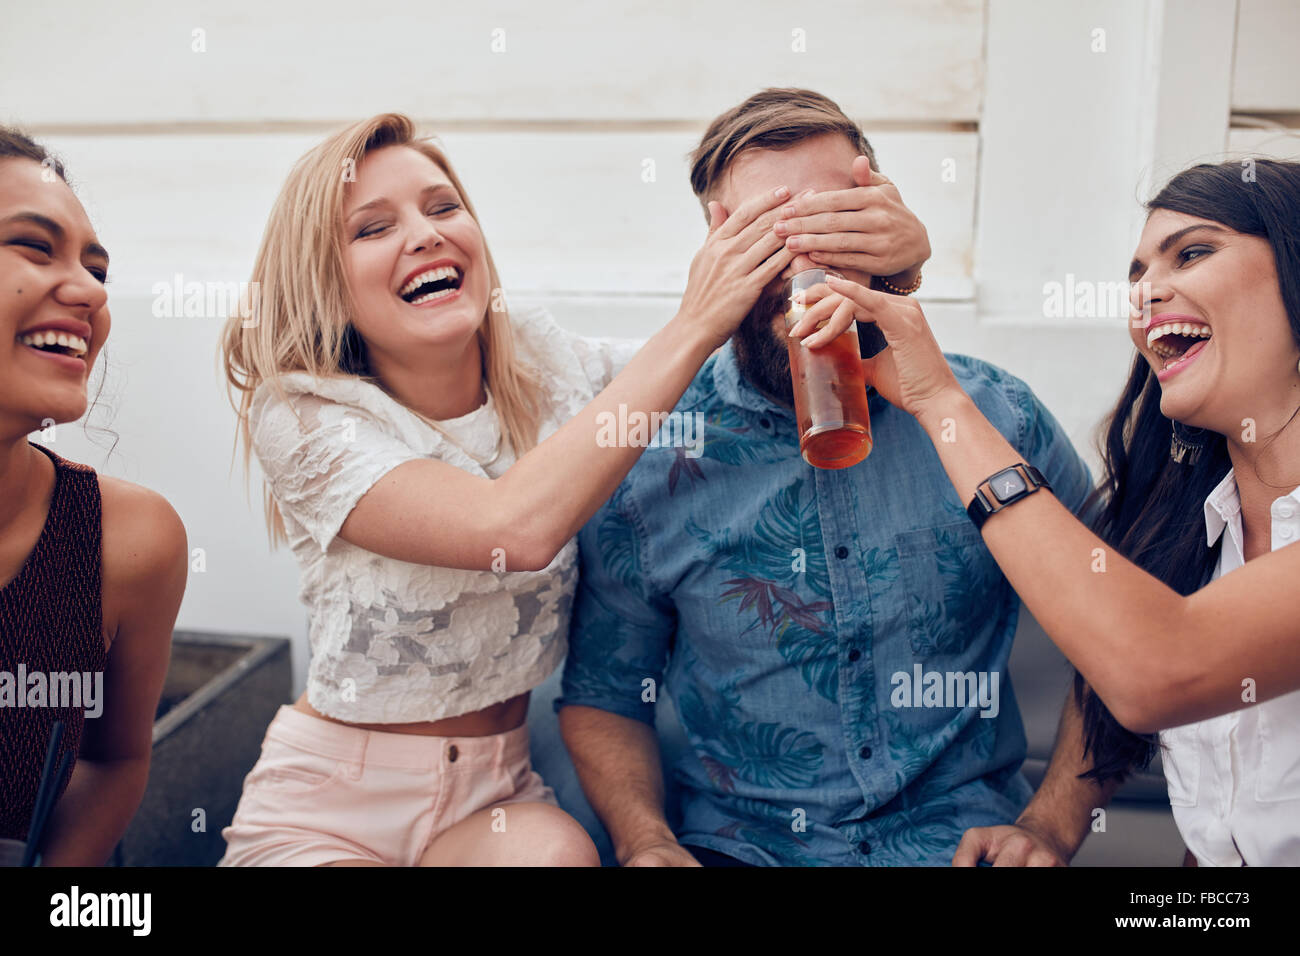 Aufnahme des jungen Menschen sitzen zusammen genießen Partei. Schließen Augen eines Mannes mit einer anderen Frau trinken. Junge Freunde havin Stockfoto